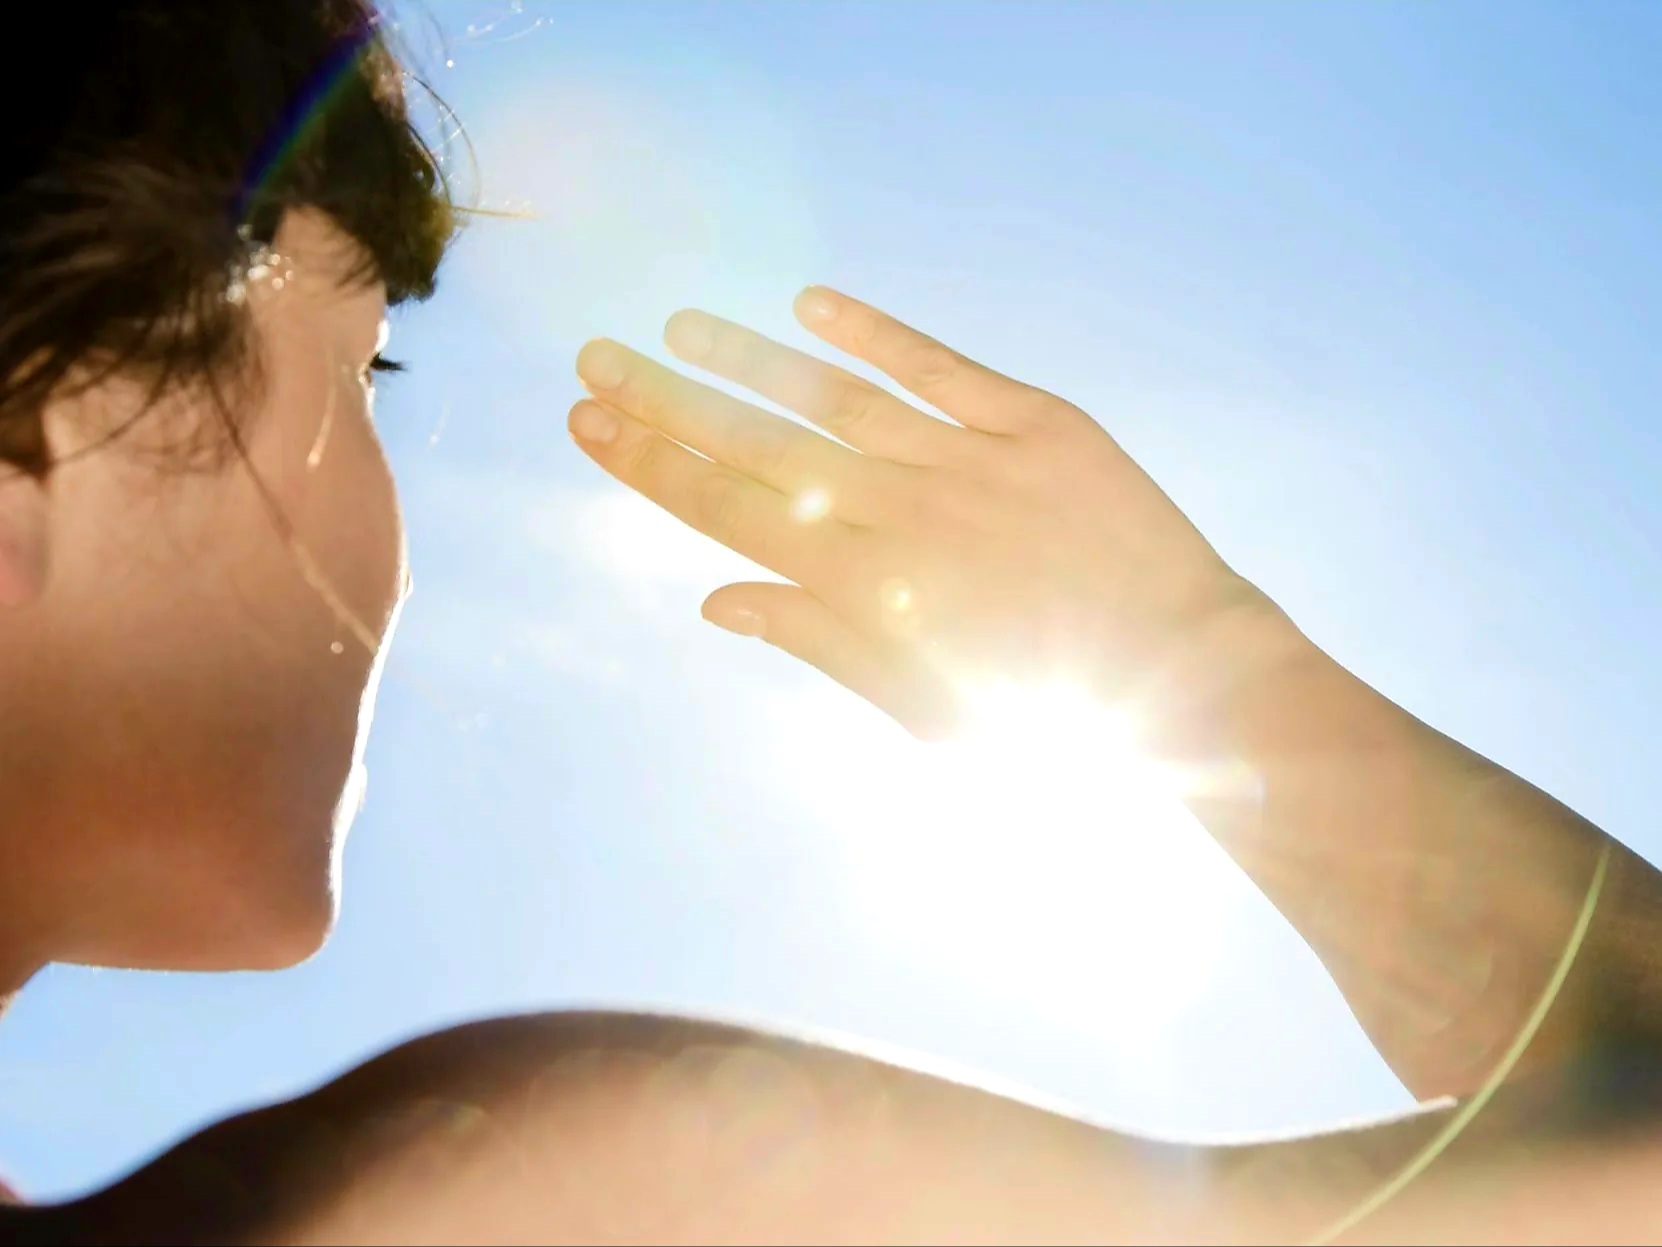 5 Efek Negatif Sinar Matahari bagi Tubuh yang Perlu Kamu Ketahui